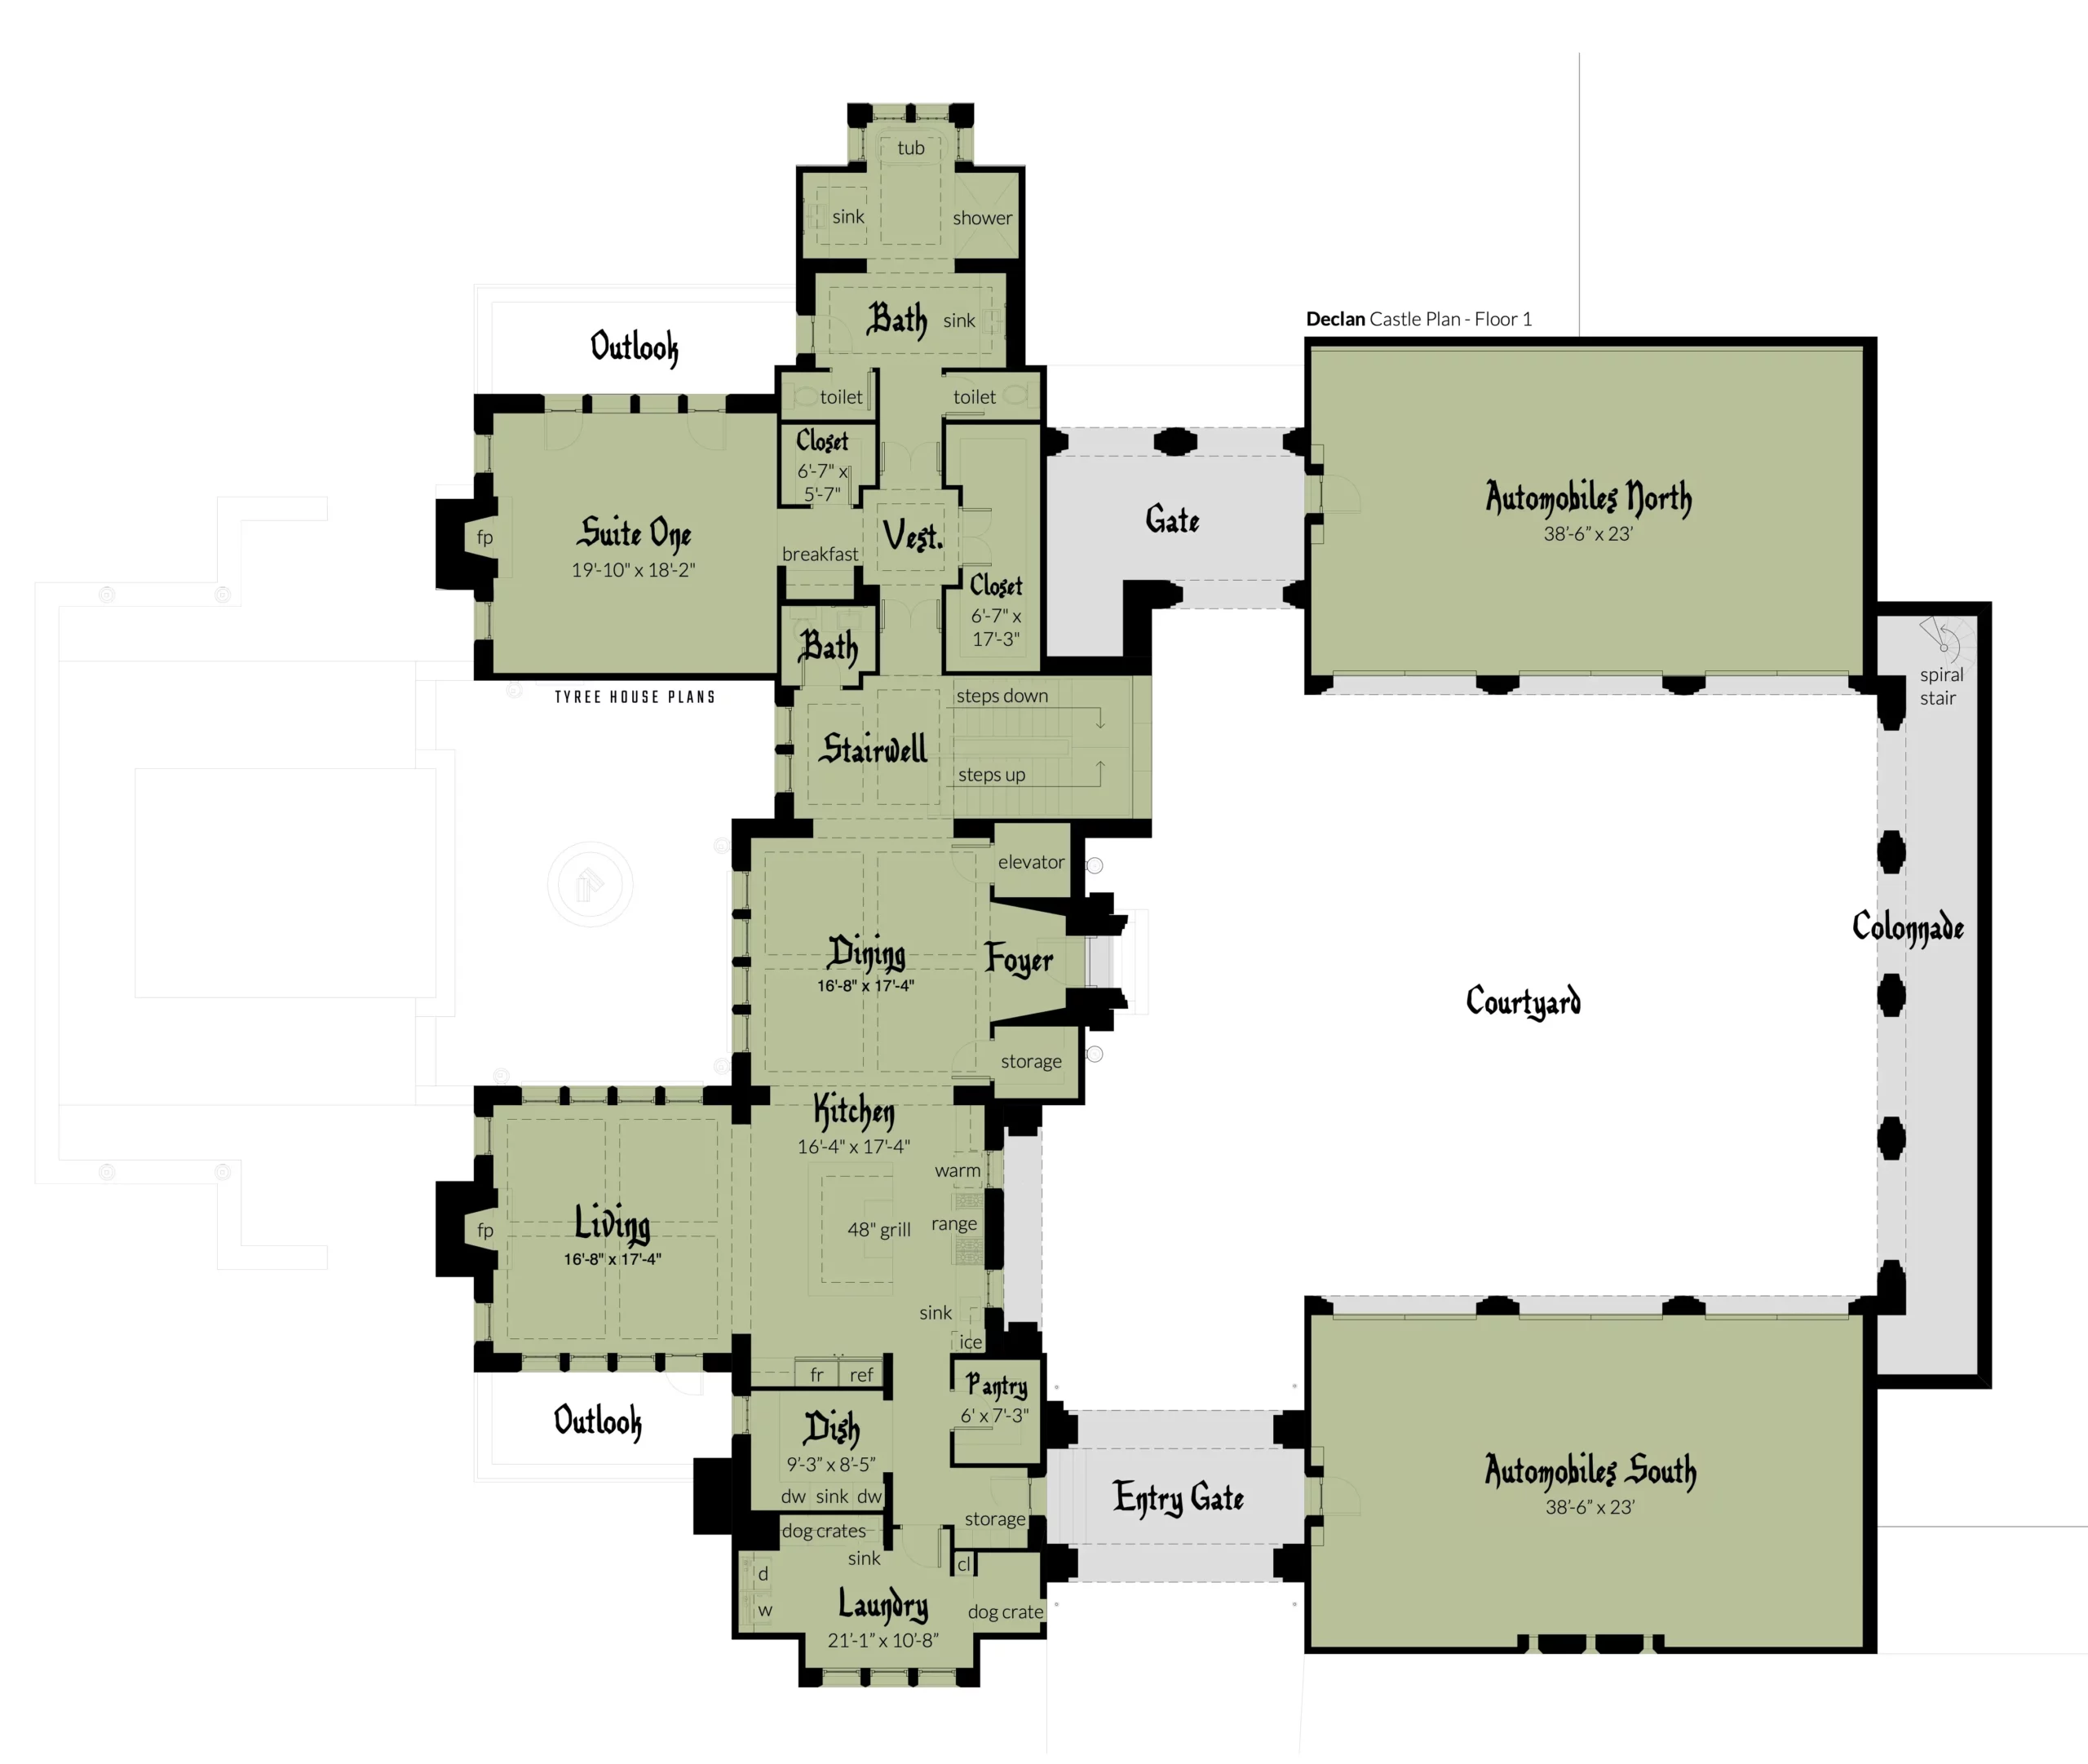 Floor 1 - Declan Castle Plan